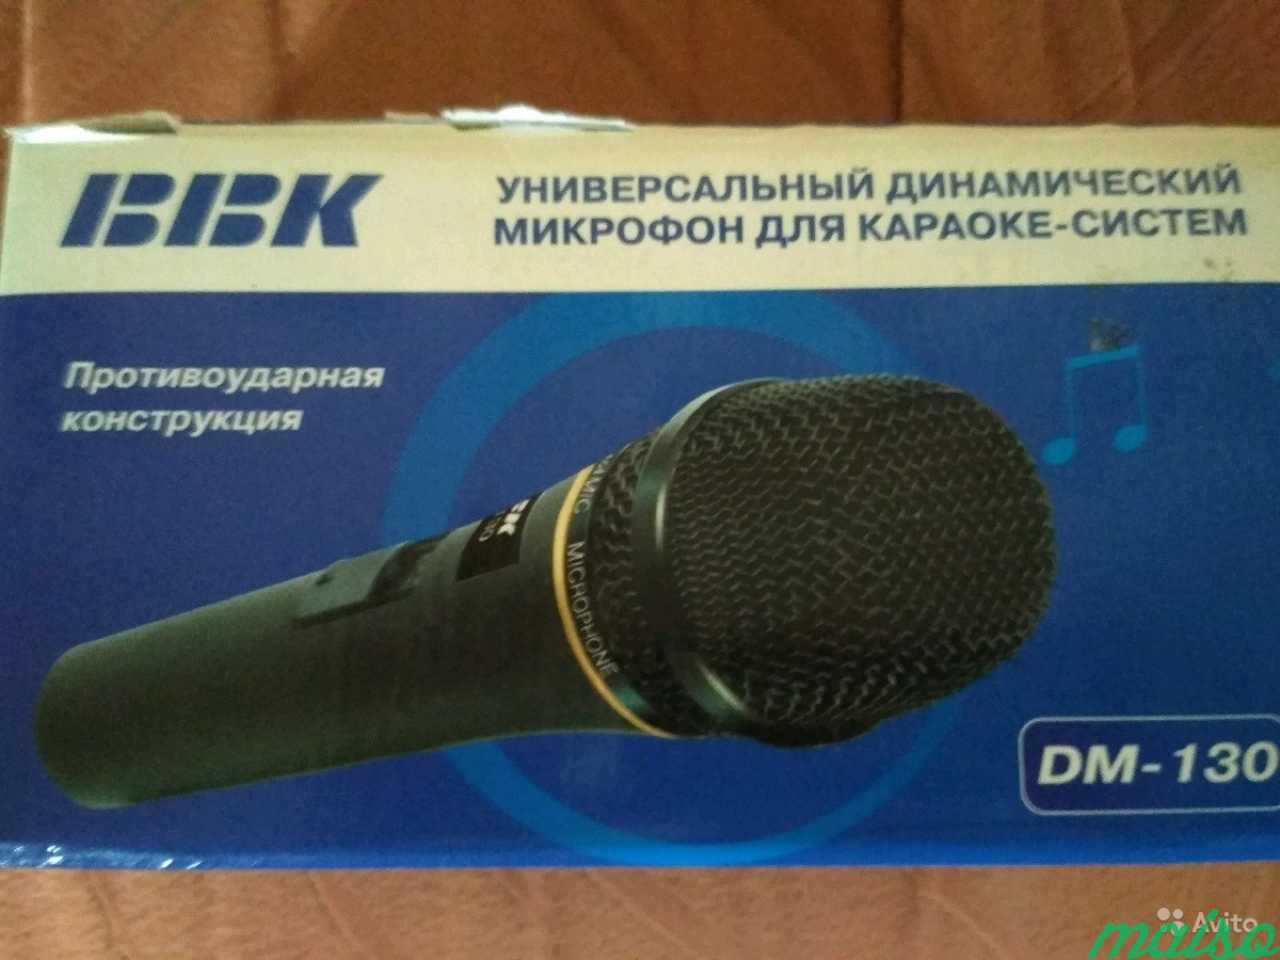 Микрофон для караоке в Санкт-Петербурге. Фото 2